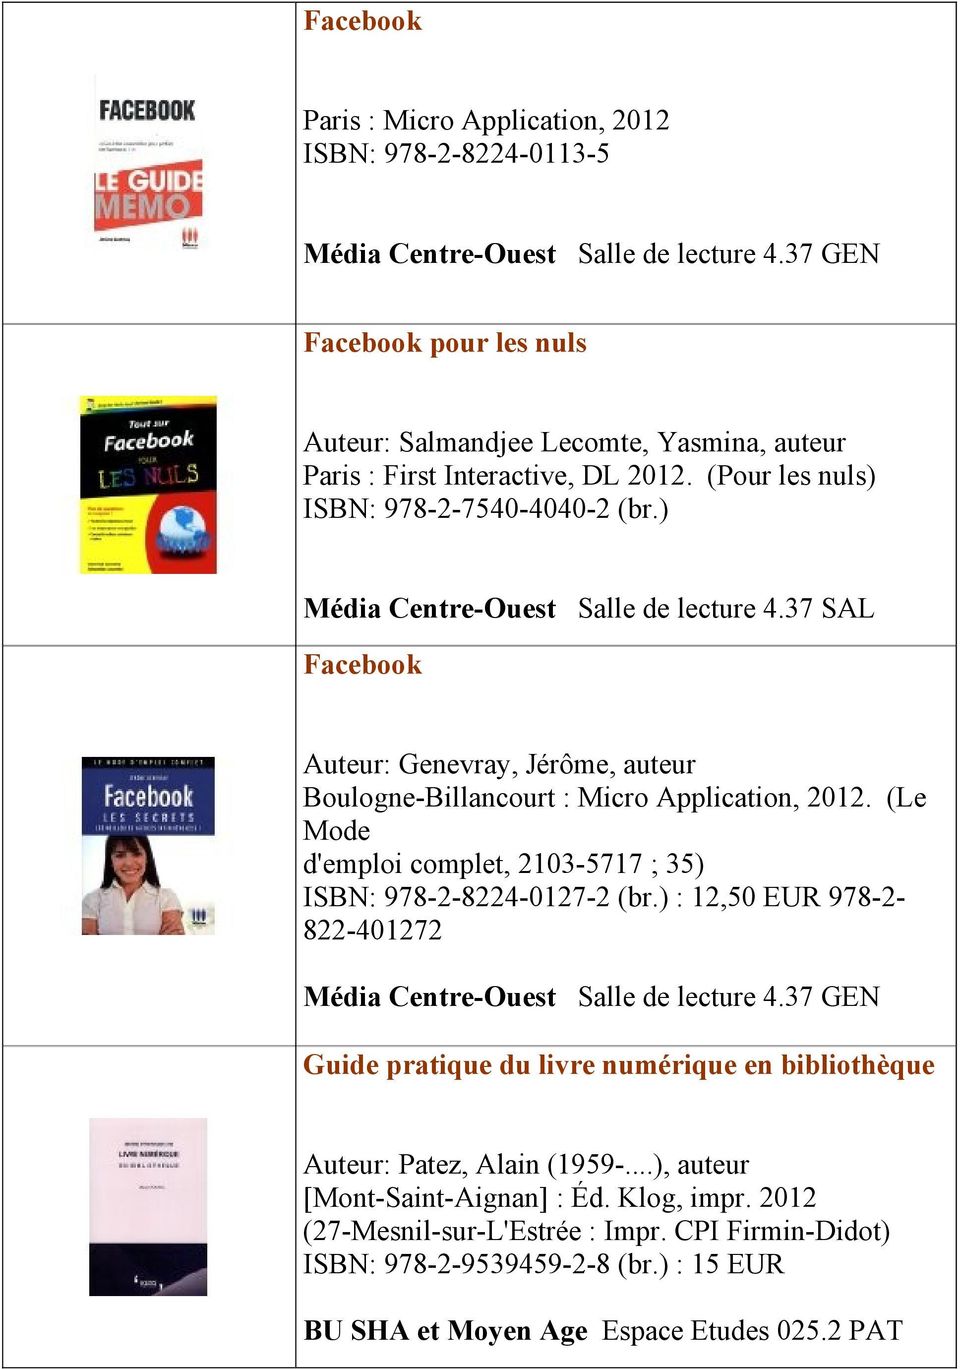 37 SAL Facebook Auteur: Genevray, Jérôme, auteur Boulogne-Billancourt : Micro Application, 2012. (Le Mode d'emploi complet, 2103-5717 ; 35) ISBN: 978-2-8224-0127-2 (br.